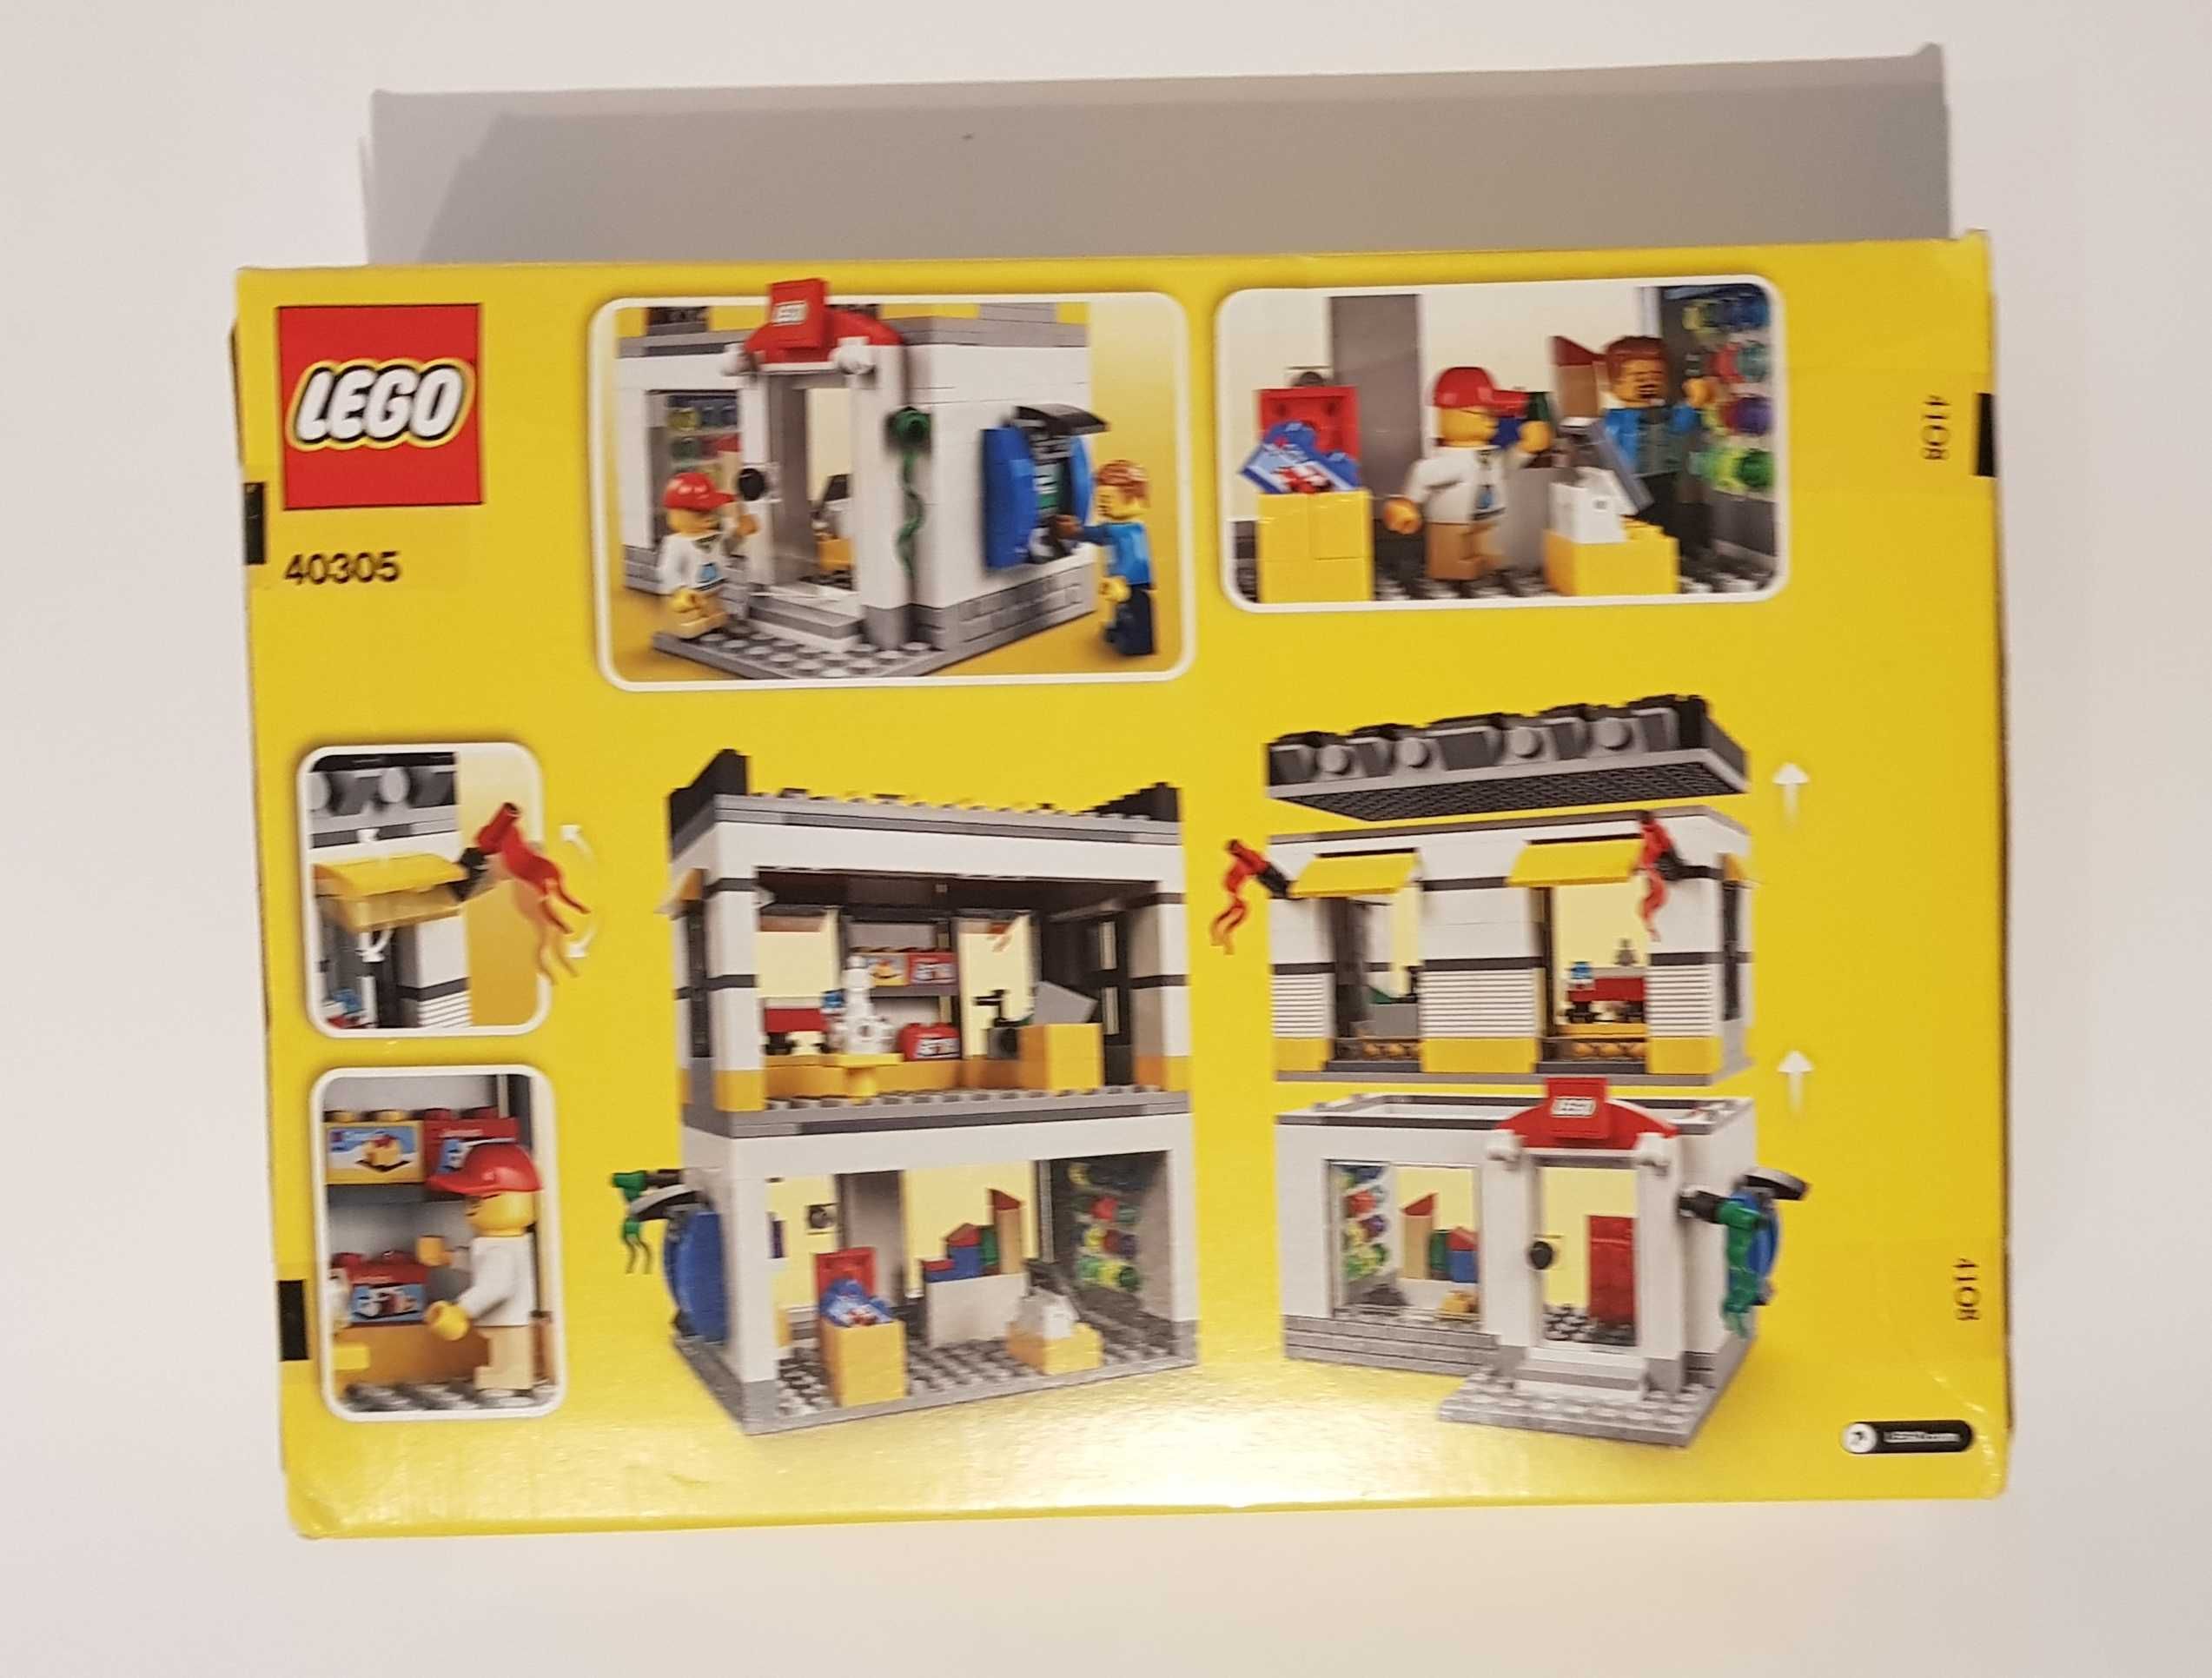 LEGO 40305 Sklep firmowy LEGO w mikroskali